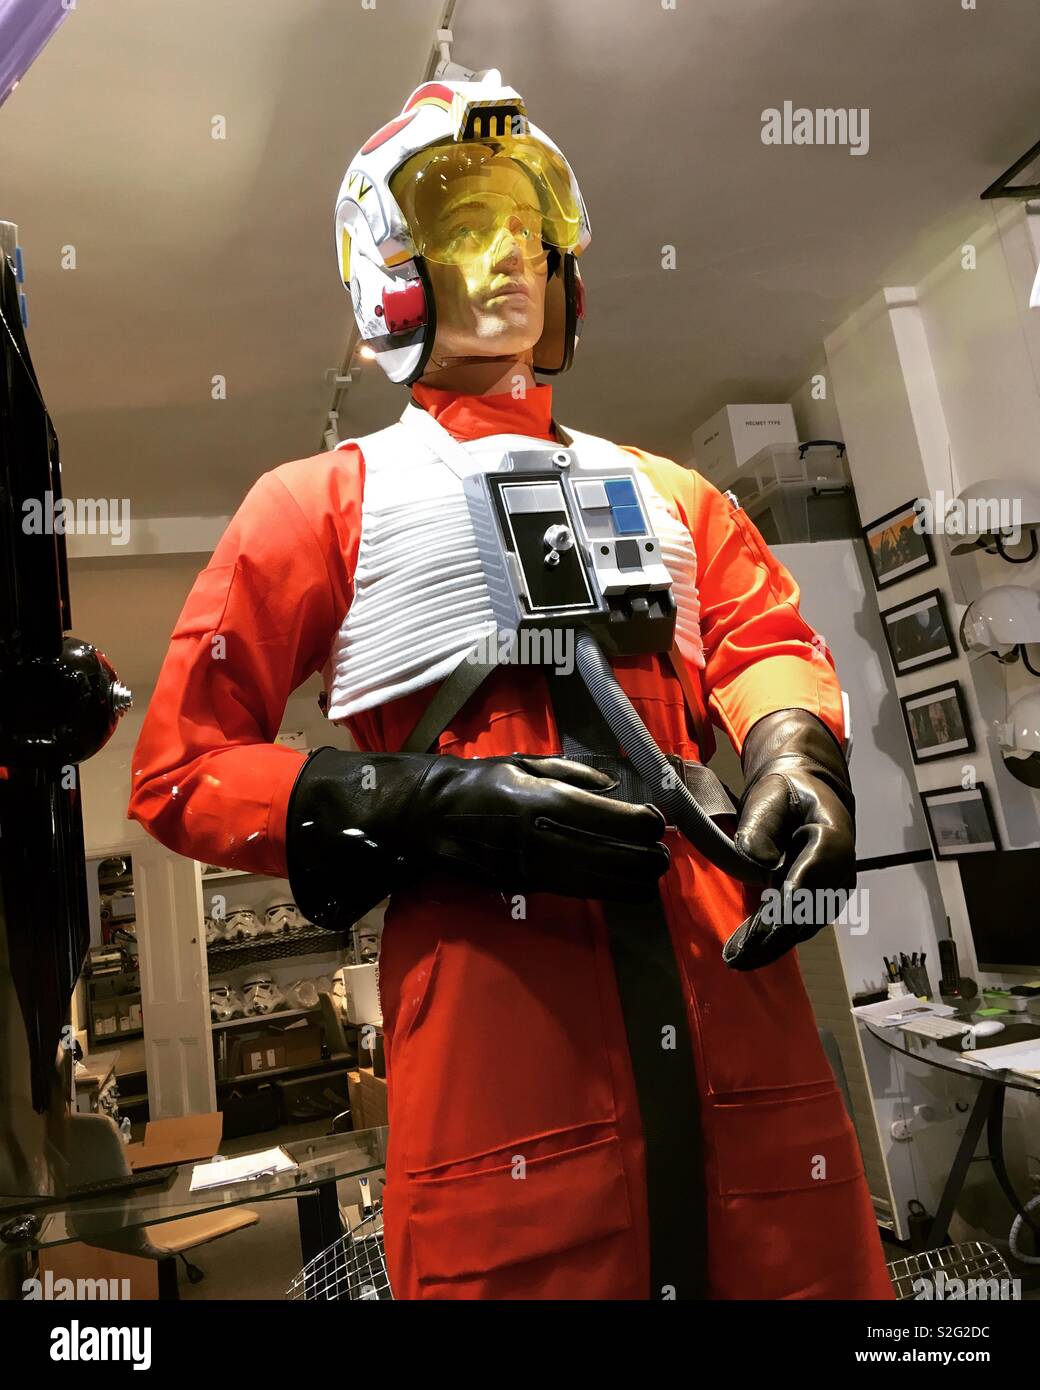 Luke Skywalker vestito di carattere / costume dal film Star Wars serie, in vendita a Shepperton Studios design shop, Twickenham, England, Regno Unito Foto Stock